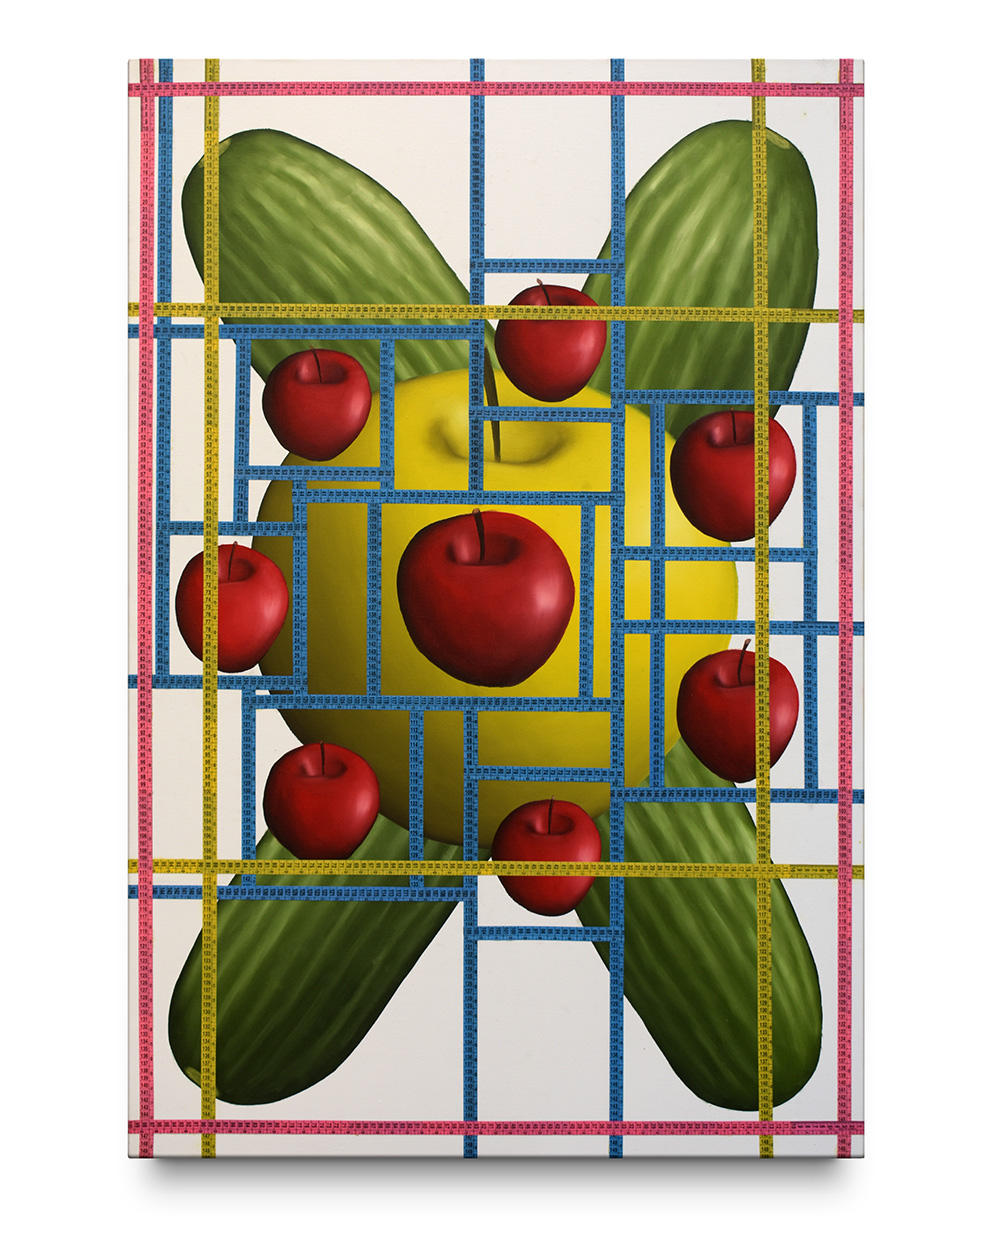 Fruit Clock, 2021, Plastic tape measure and oli on canvas, 100 x 150 CM